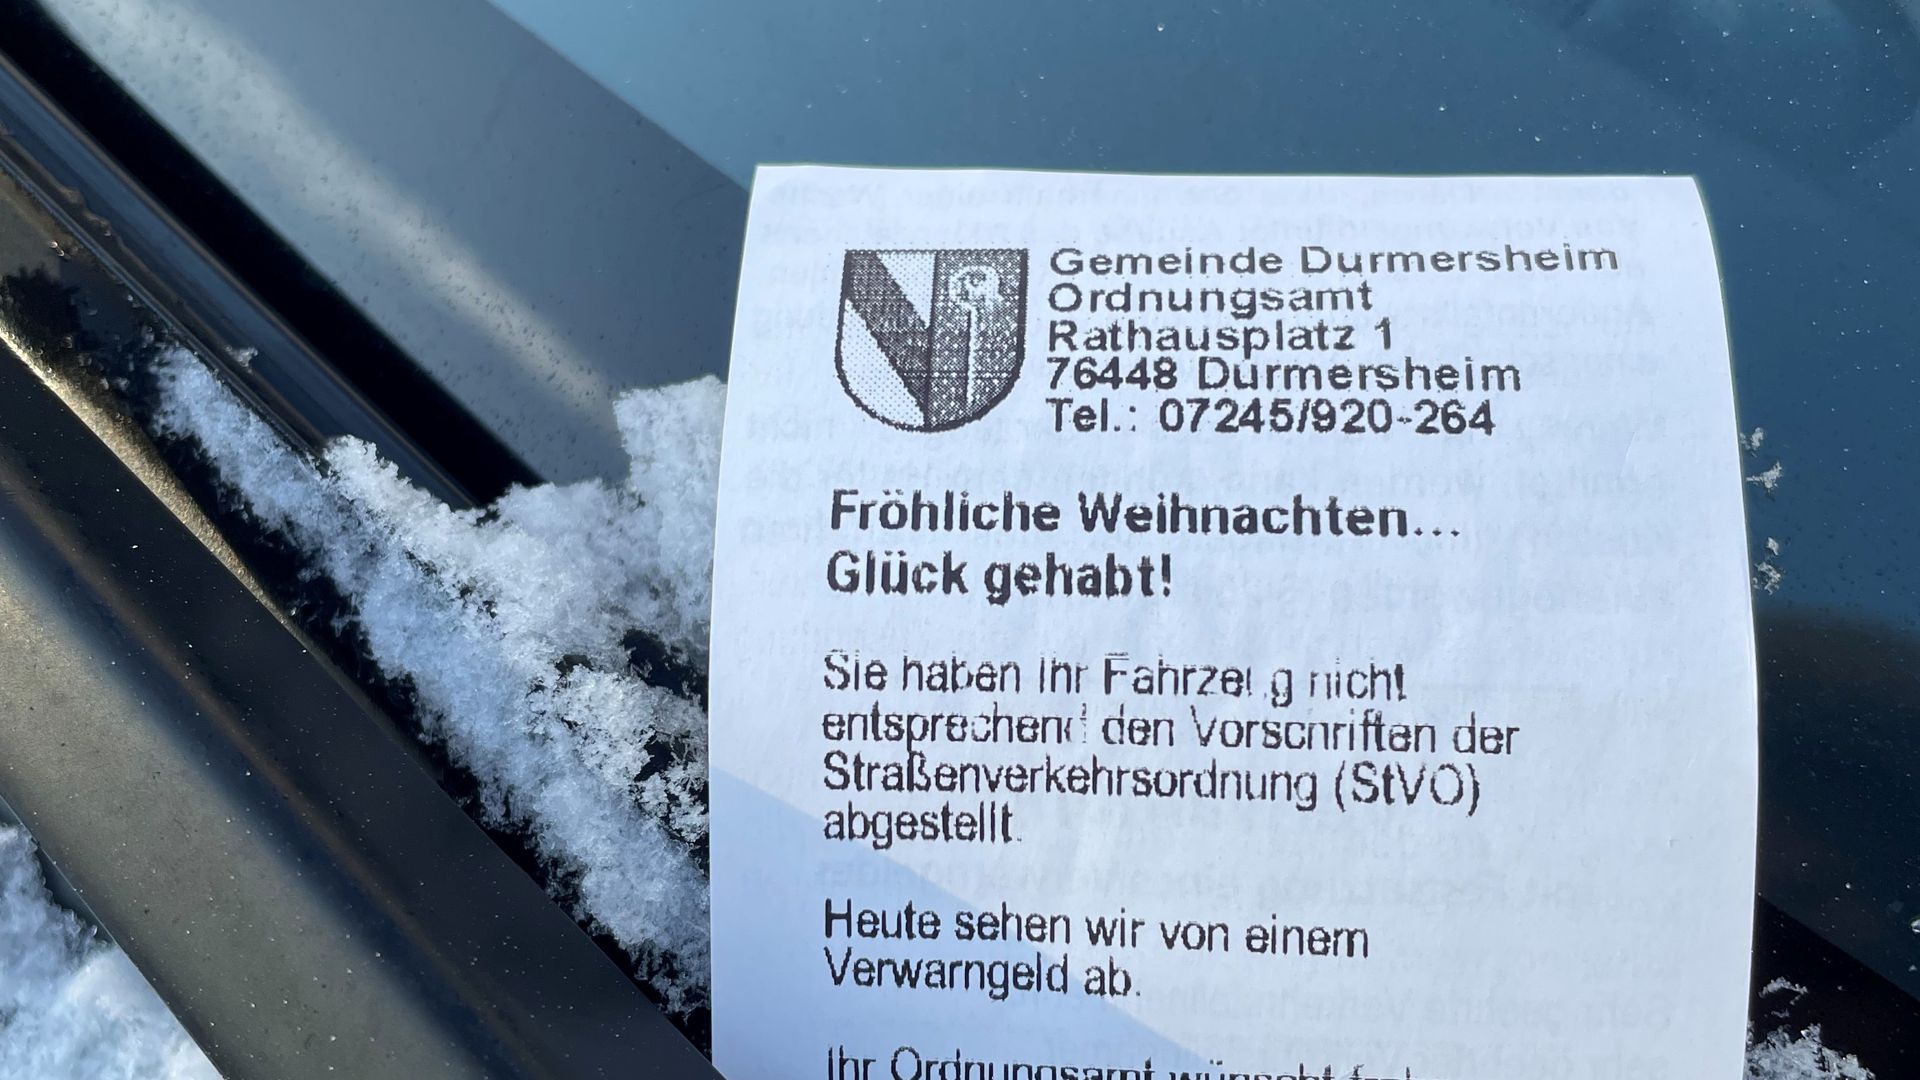 Überraschung an der Heckscheibe: Normalerweise werden in Durmersheim die Parkzeit überschreitet, muss normalerweise 15 Euro zahlen.